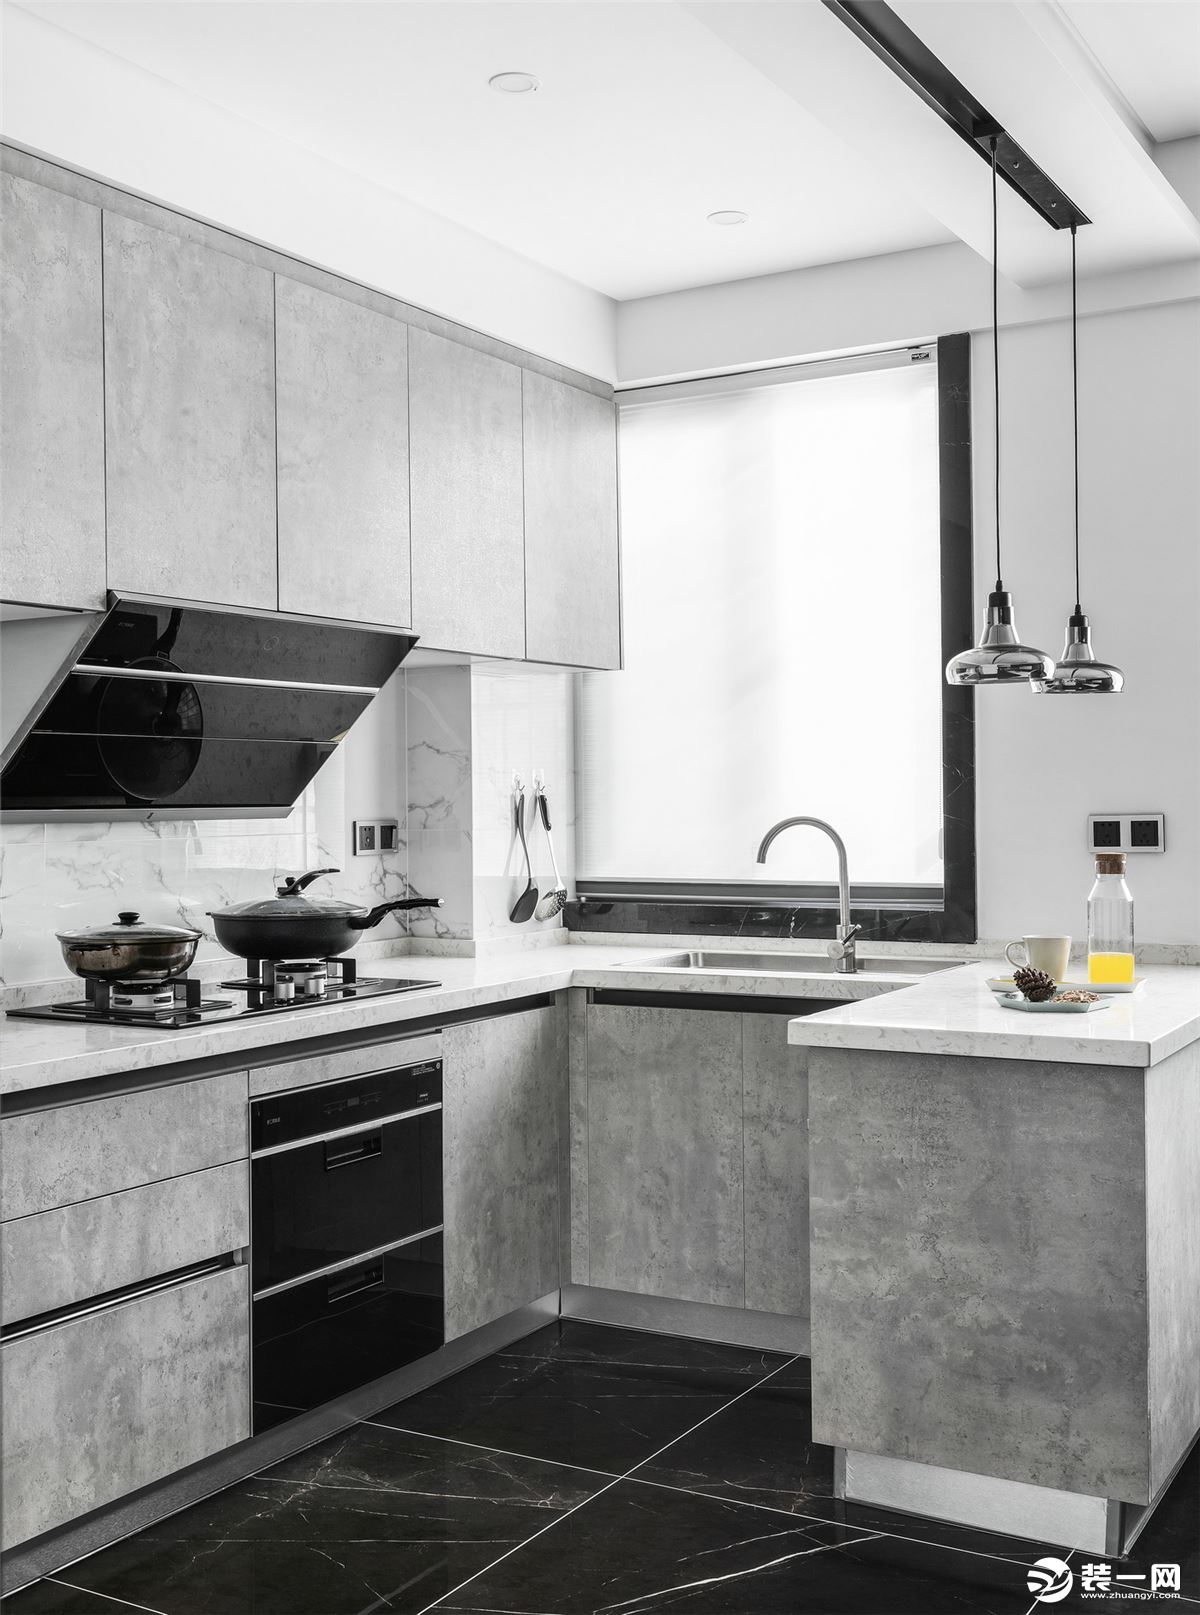 【重庆佳天下装饰】中央公园现代黑白灰风格厨房装修案例